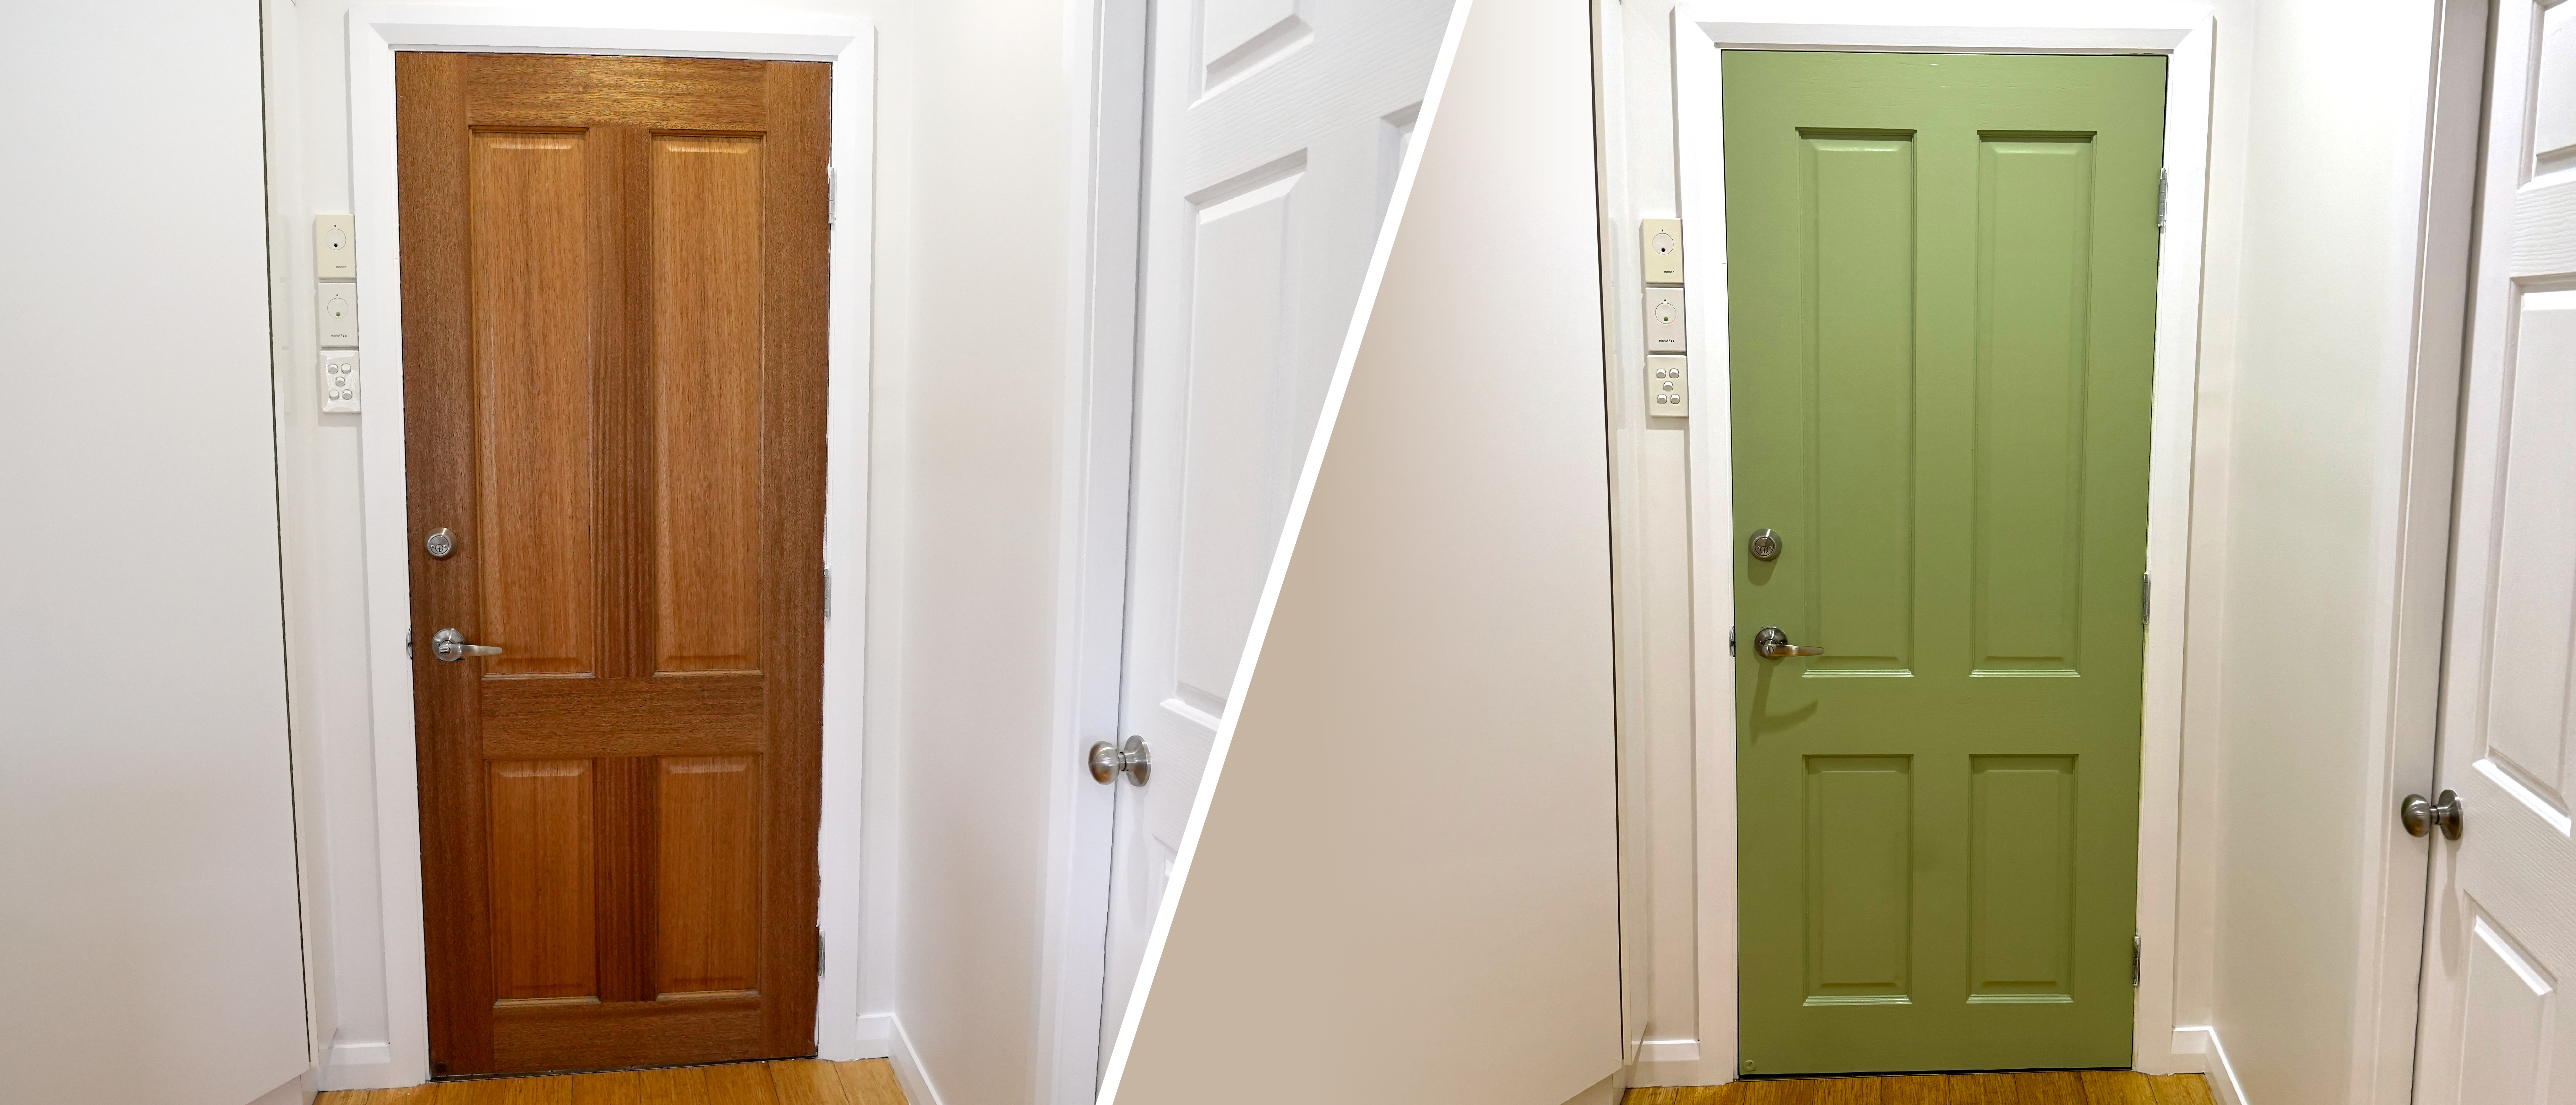 How To Repaint A Wooden Door